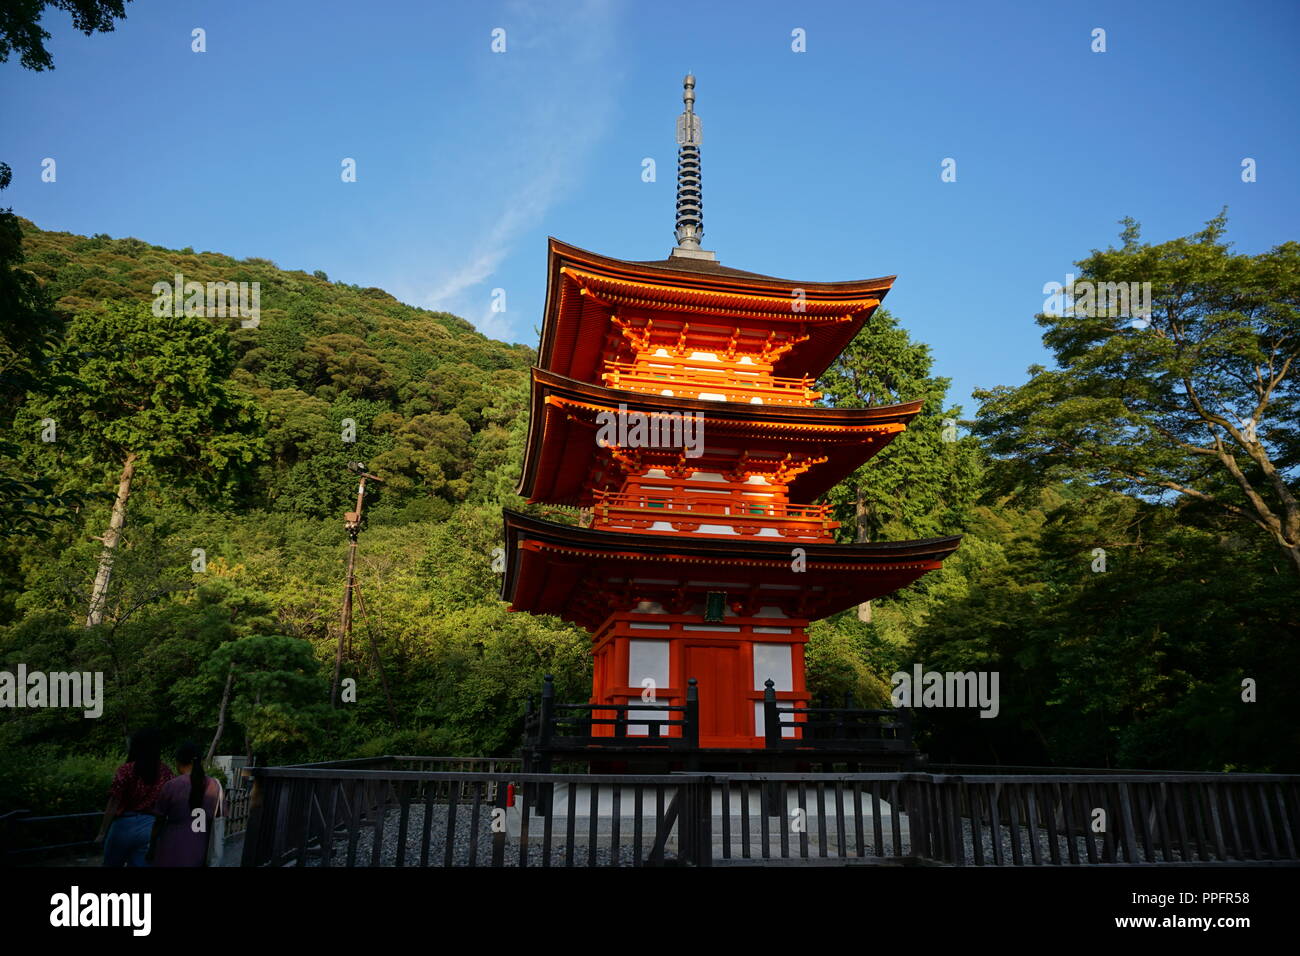 Kyoto, Japan - August 01, 2018: Die koyasu - nein - Pagode der Kiyomizu-dera Buddhistischen Tempel, ein UNESCO-Weltkulturerbe. Foto: George Stockfoto